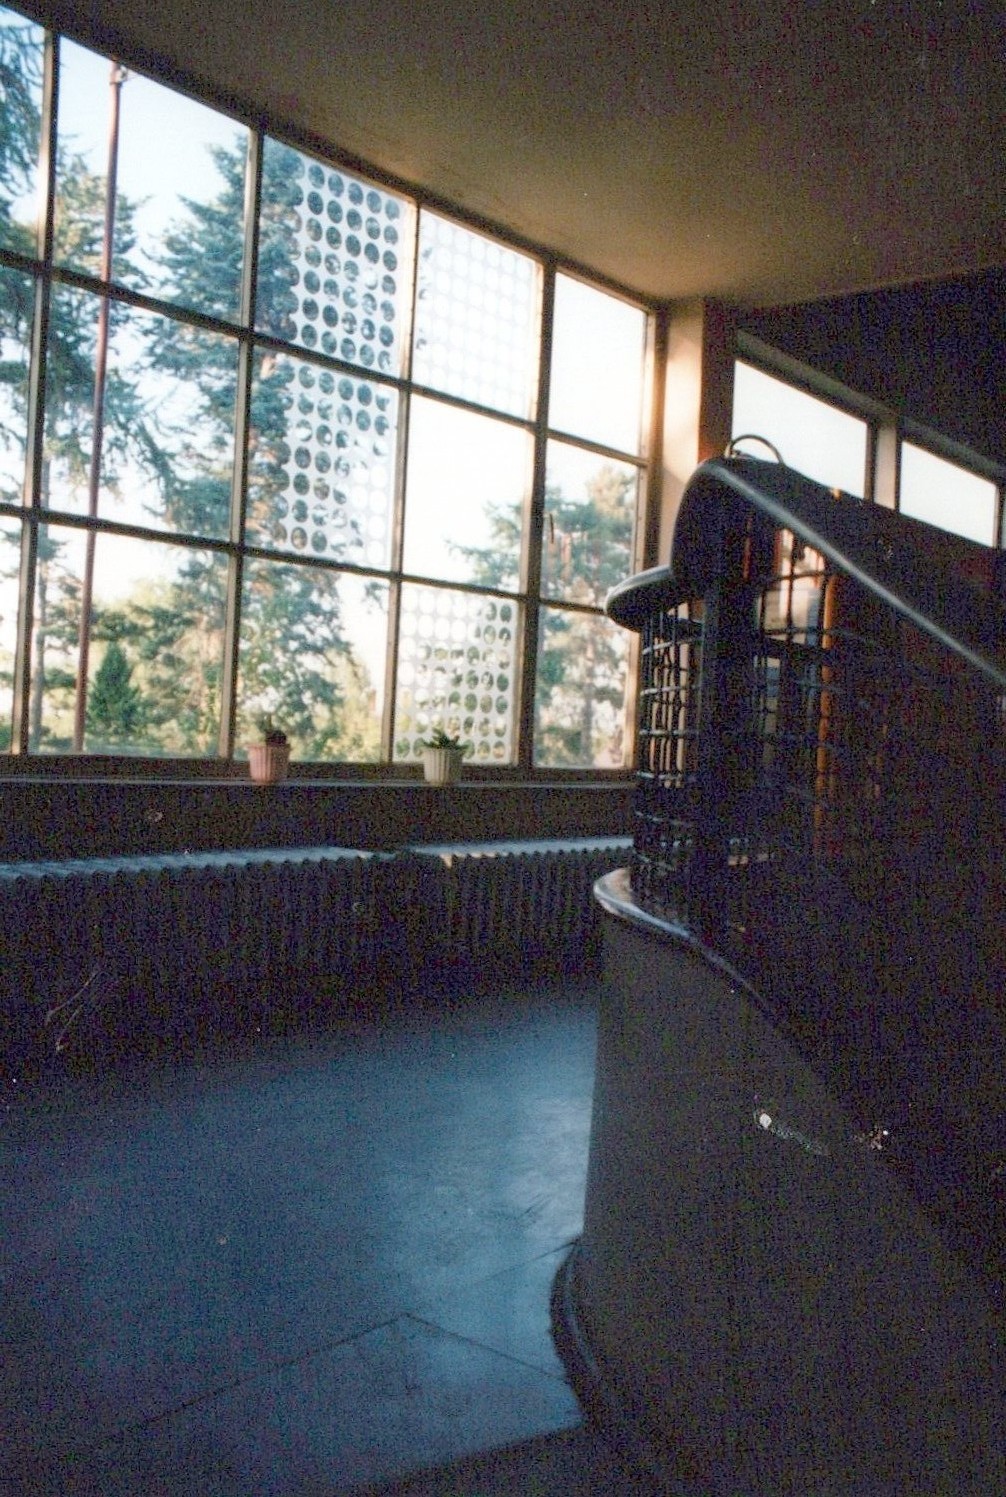 Fotografie: Treppenaufgang innen zum Obergeschoß oberer Gang mit Fenstern (Haus Schminke RR-F)